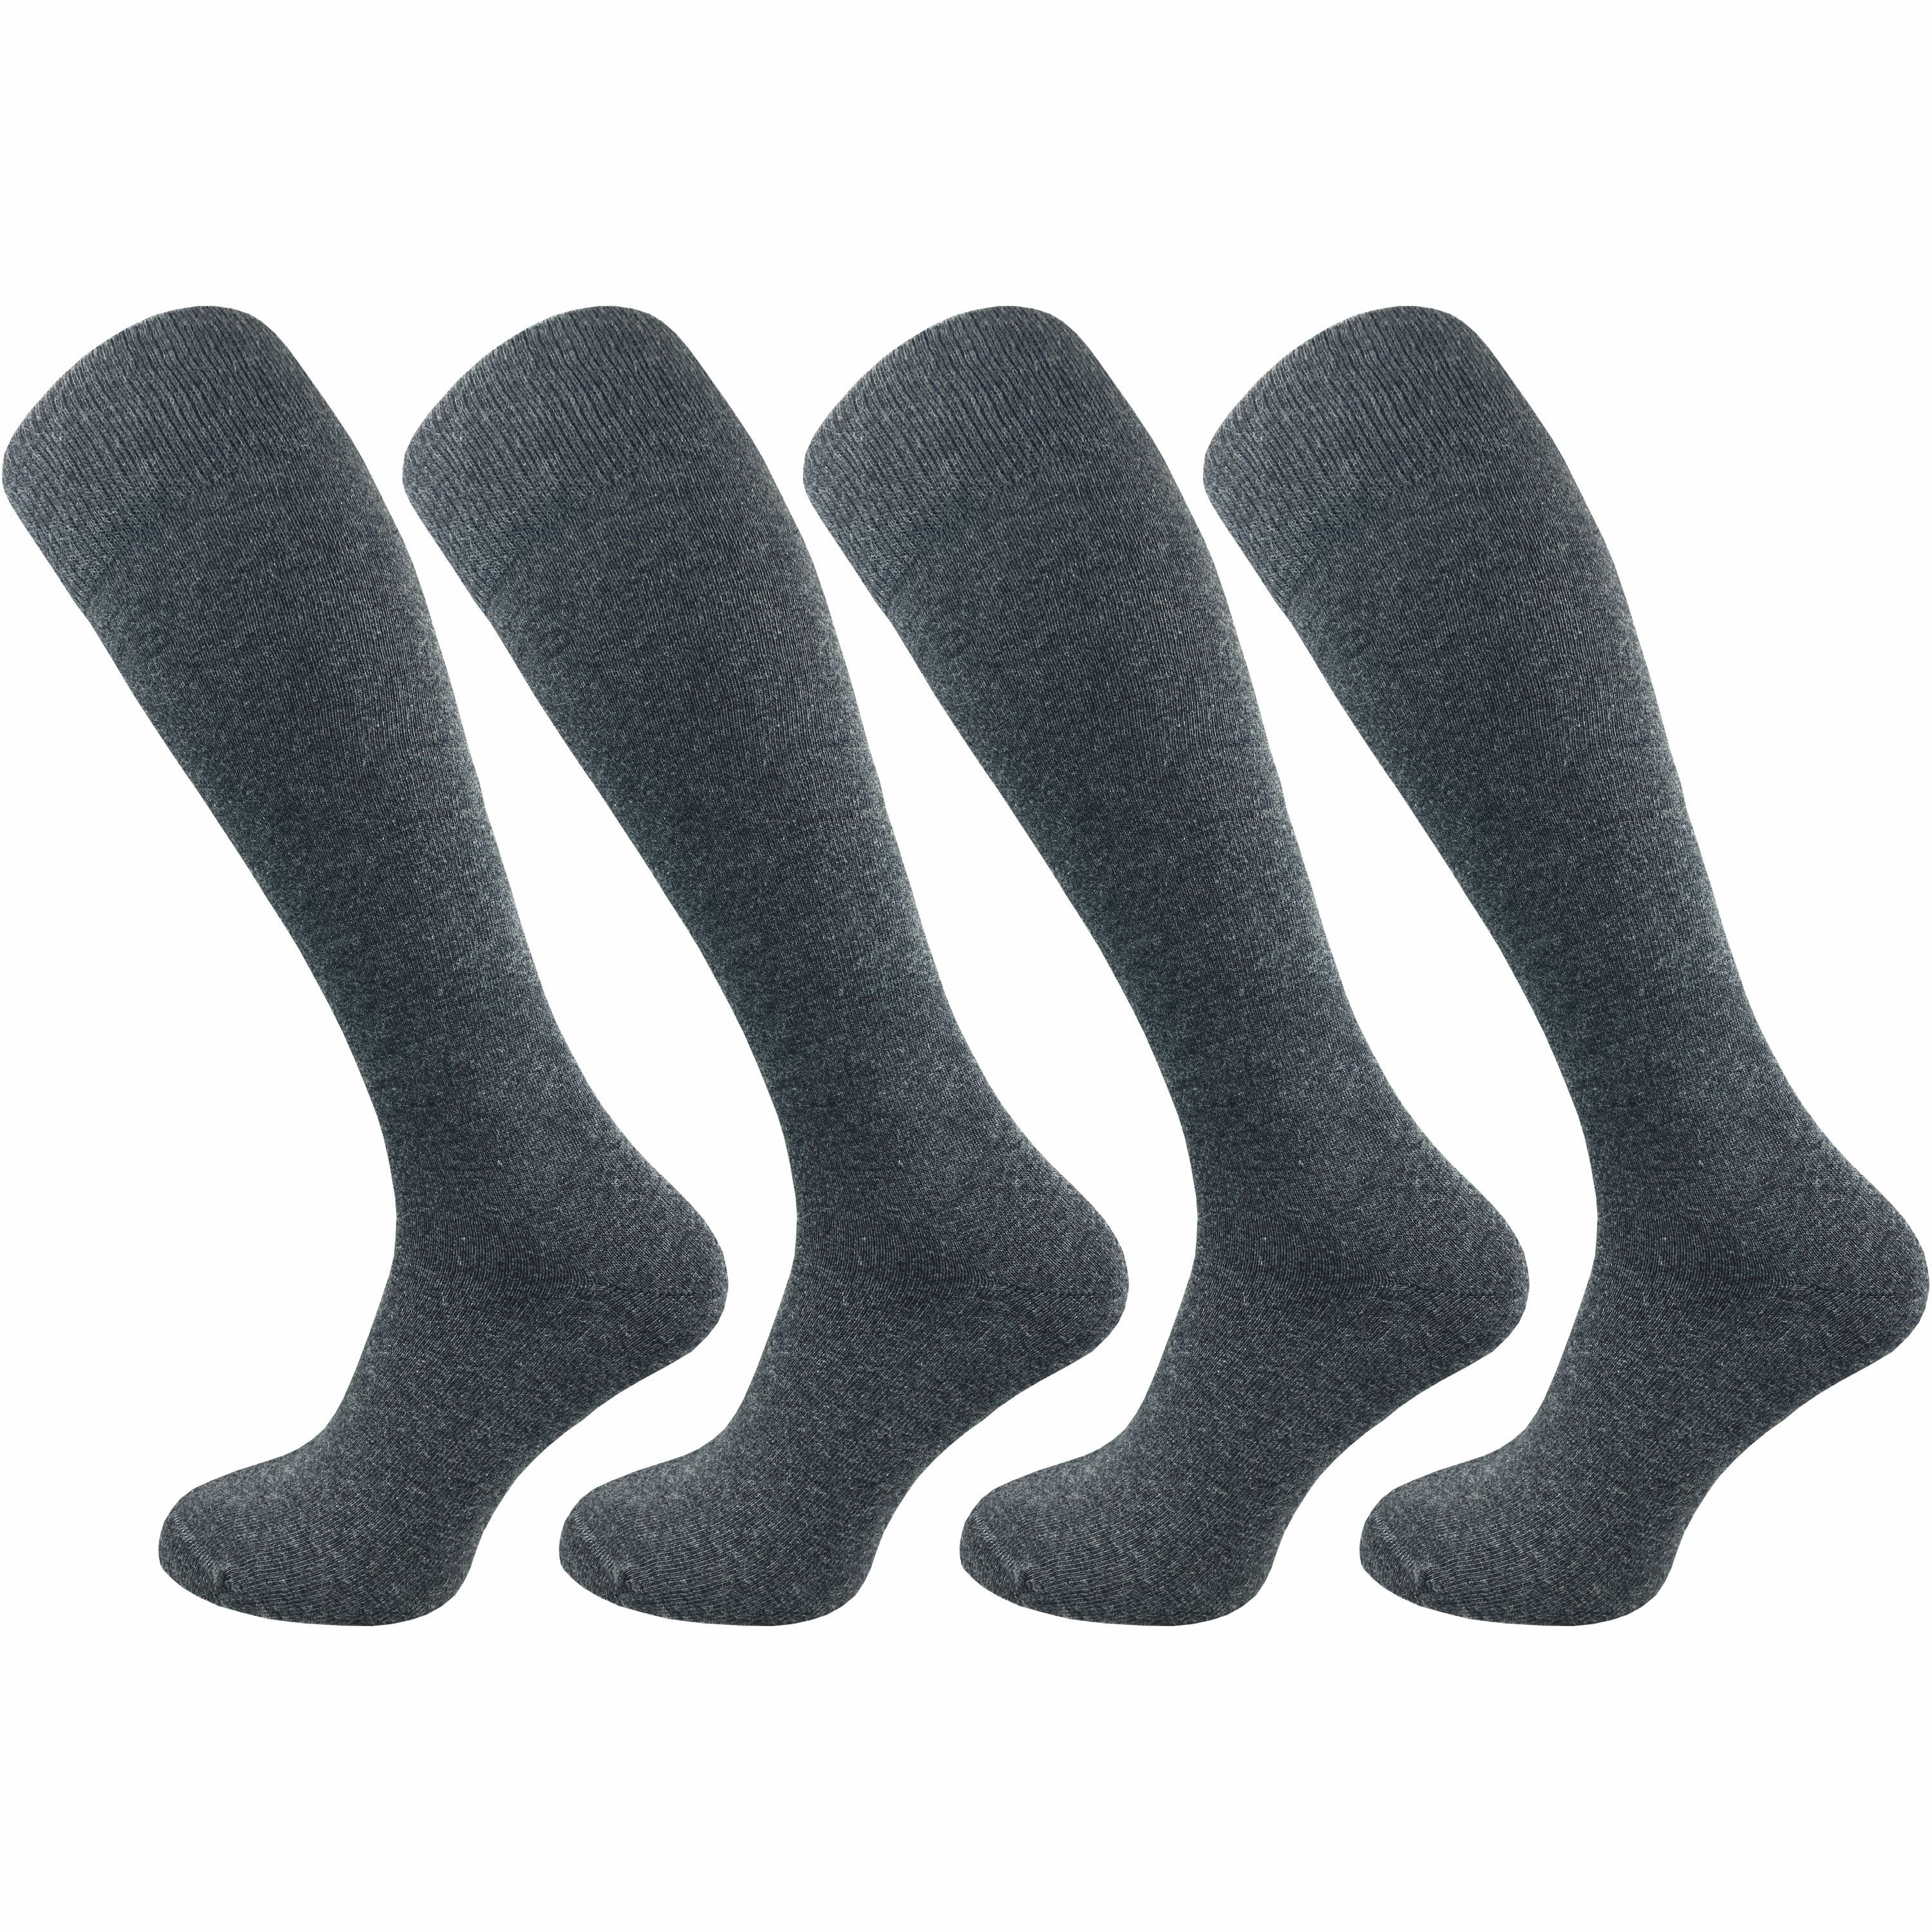 GAWILO Kniestrümpfe für Herren aus Baumwolle - extra weich & ohne drückende Naht (4 Paar) Lange Socken mit speziellem Komfortbund, der nicht einschneidet grau